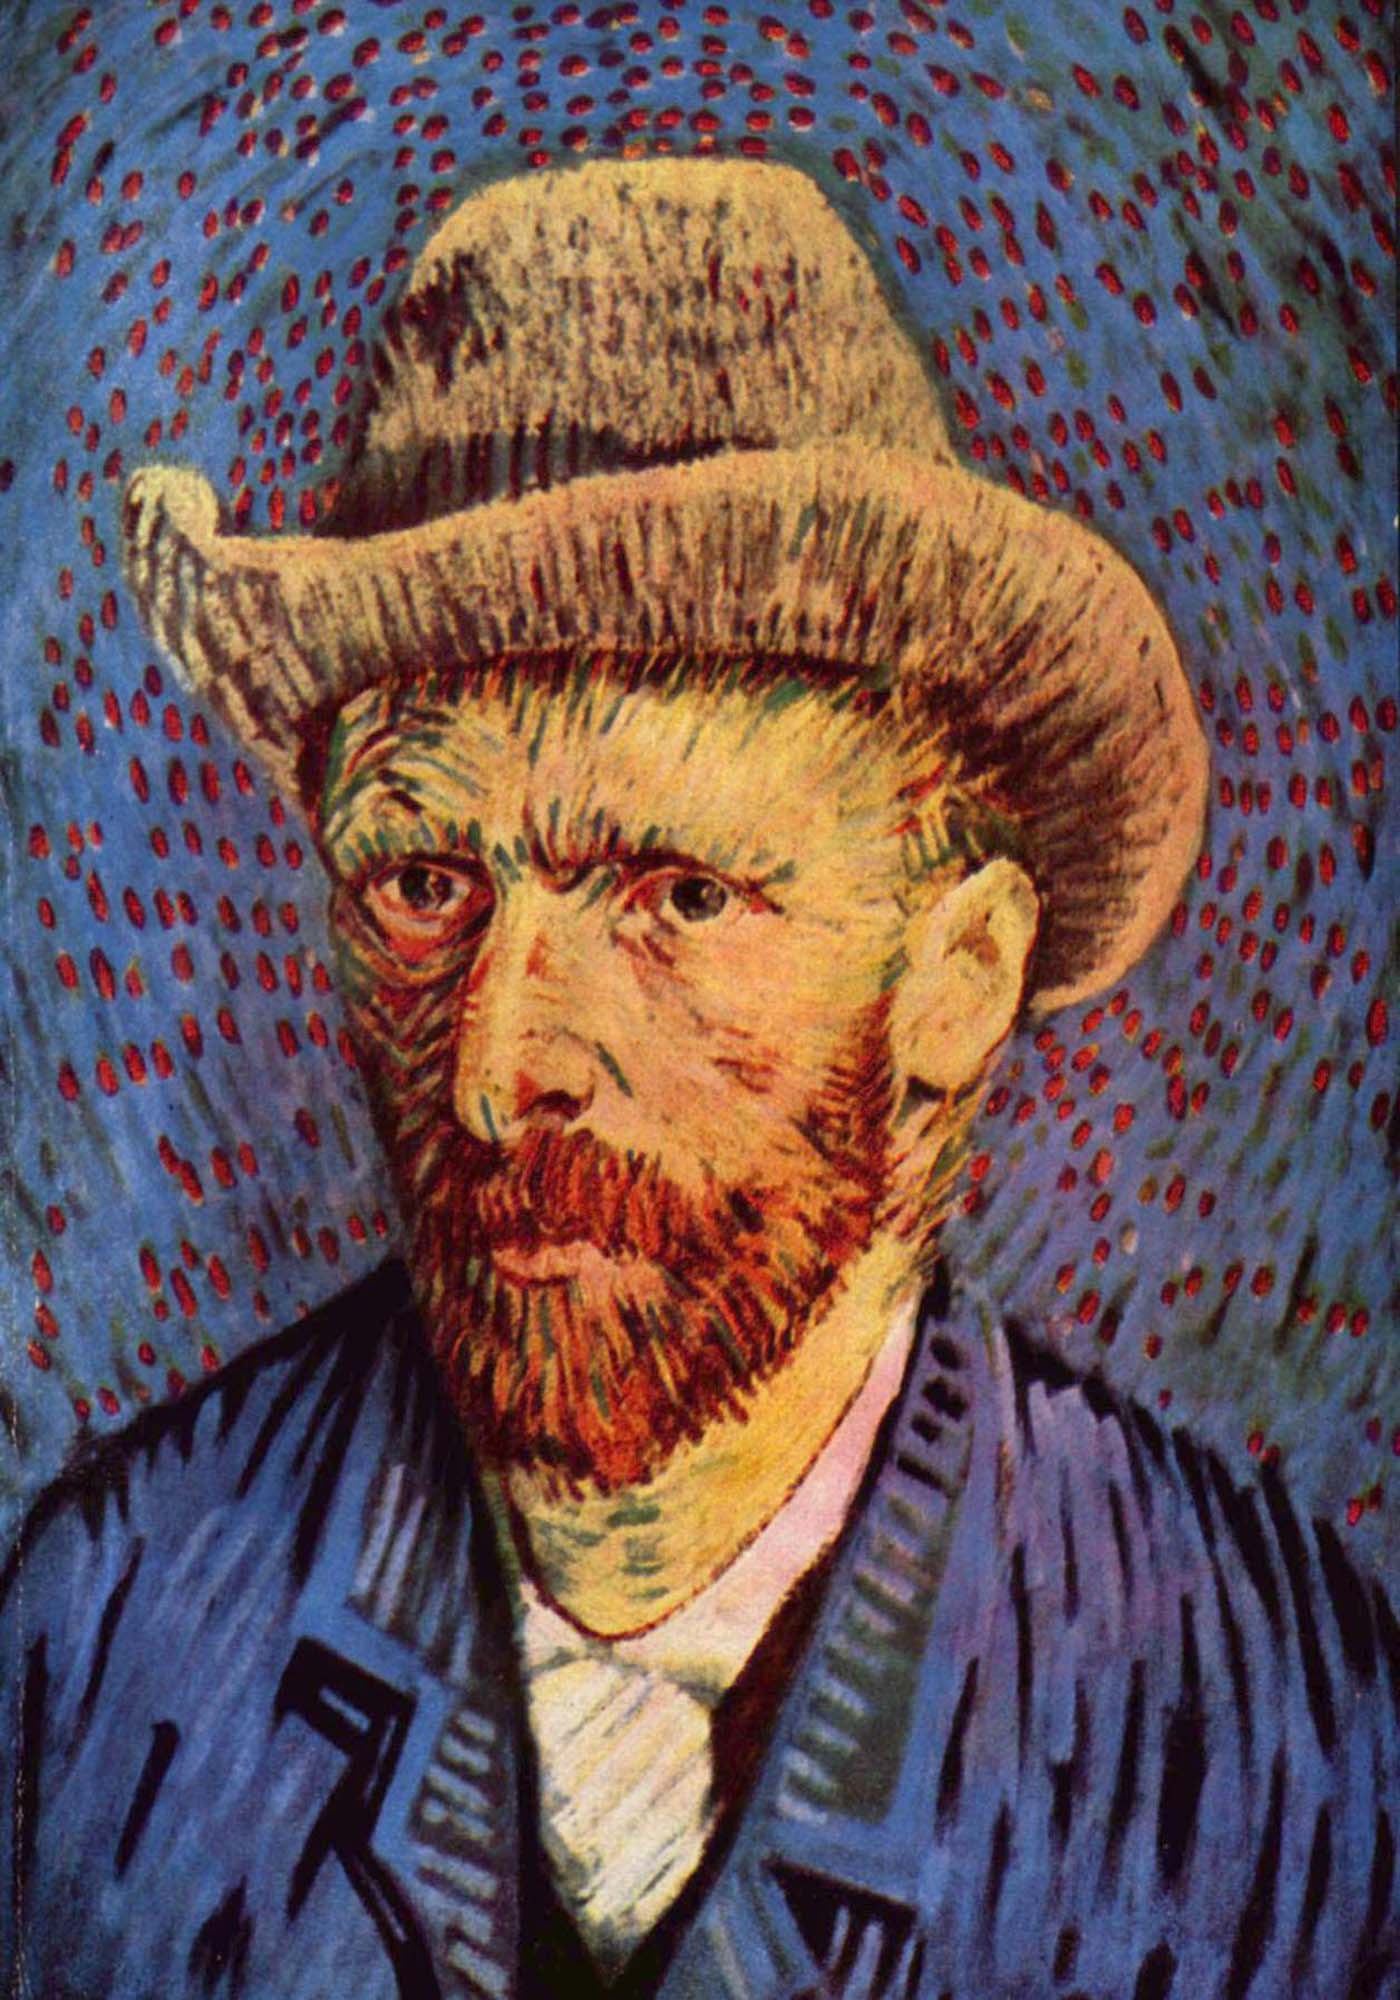 Van Gogh &quot;Self-Portrait&quot; Framed Print - USTAD HOME